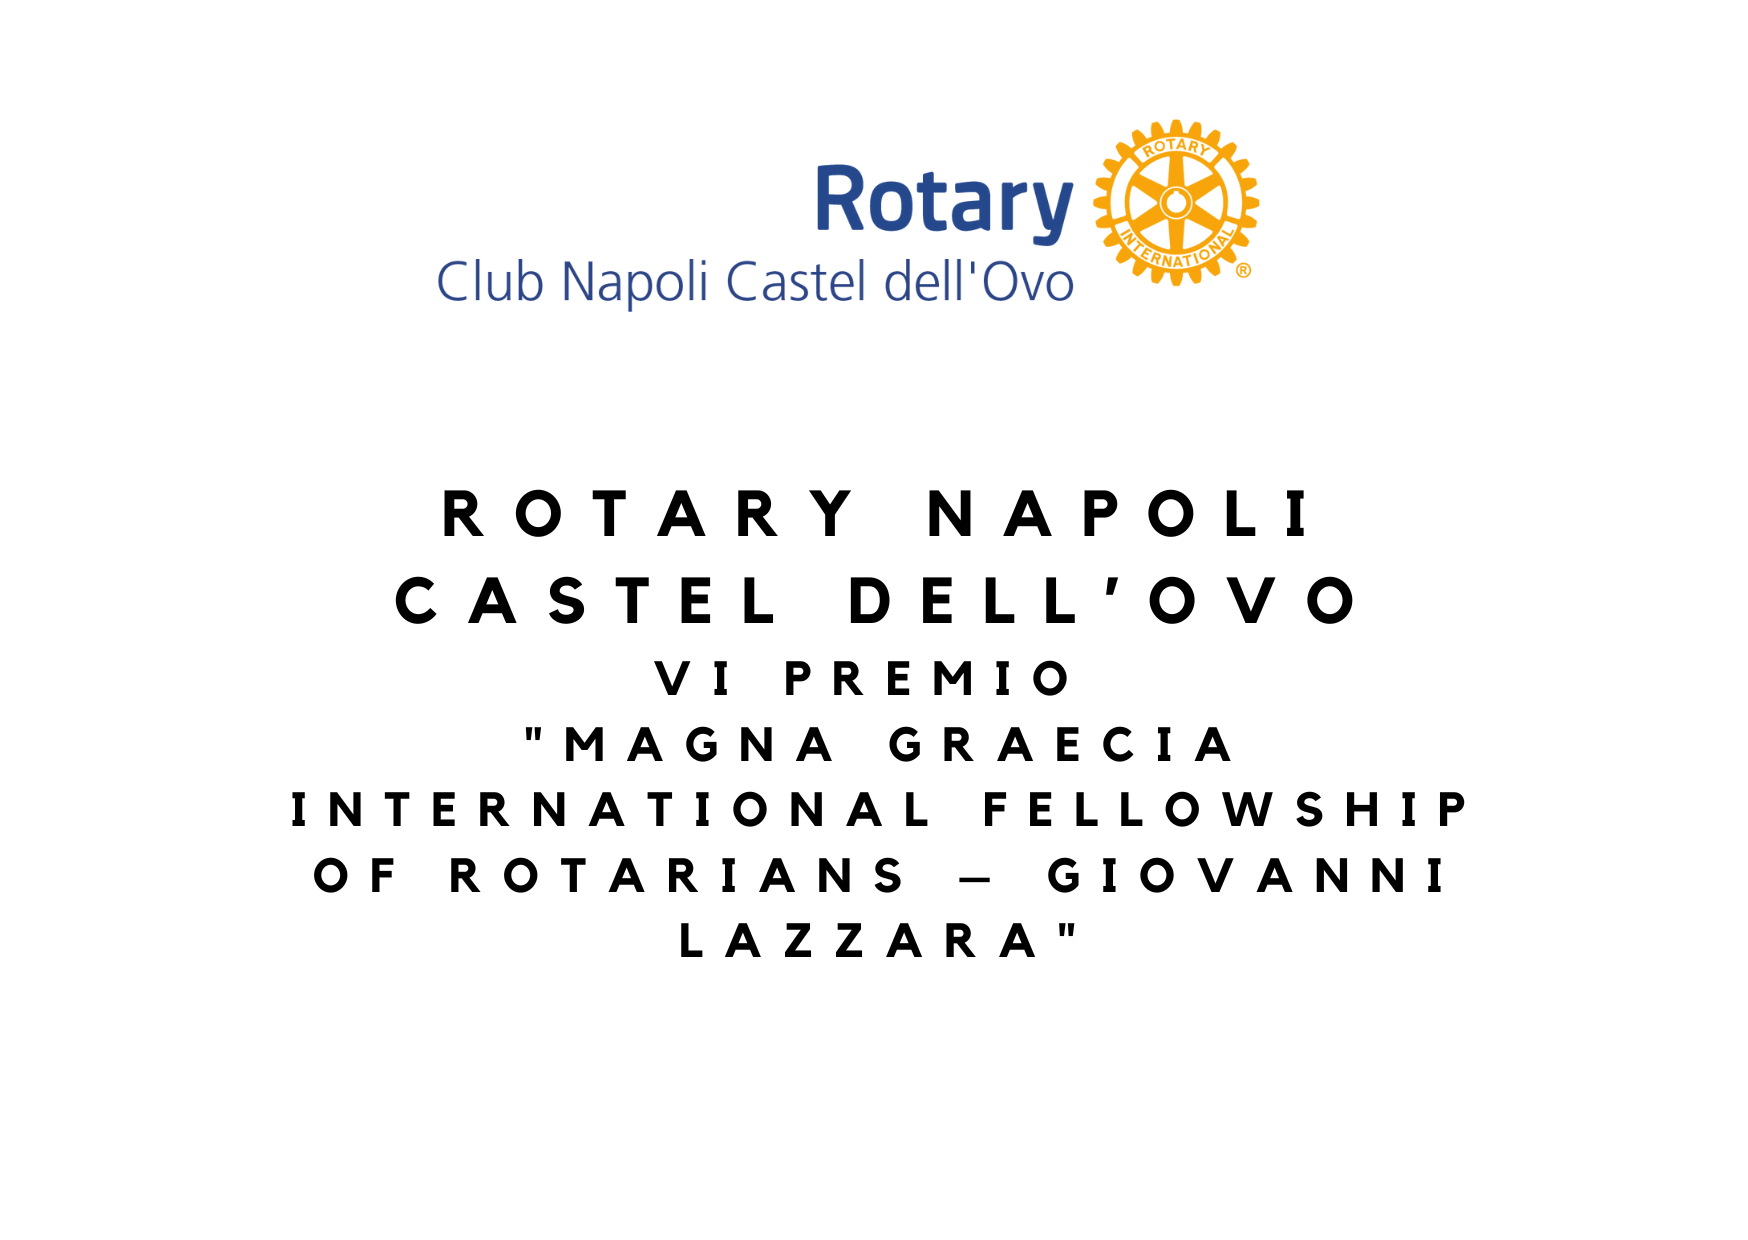 Rotary Napoli Castel dell’Ovo: lunedì 27 febbraio al Circolo Canottieri il VI premio “Magna Graecia International Fellowship of Rotarians – Giovanni Lazzara”